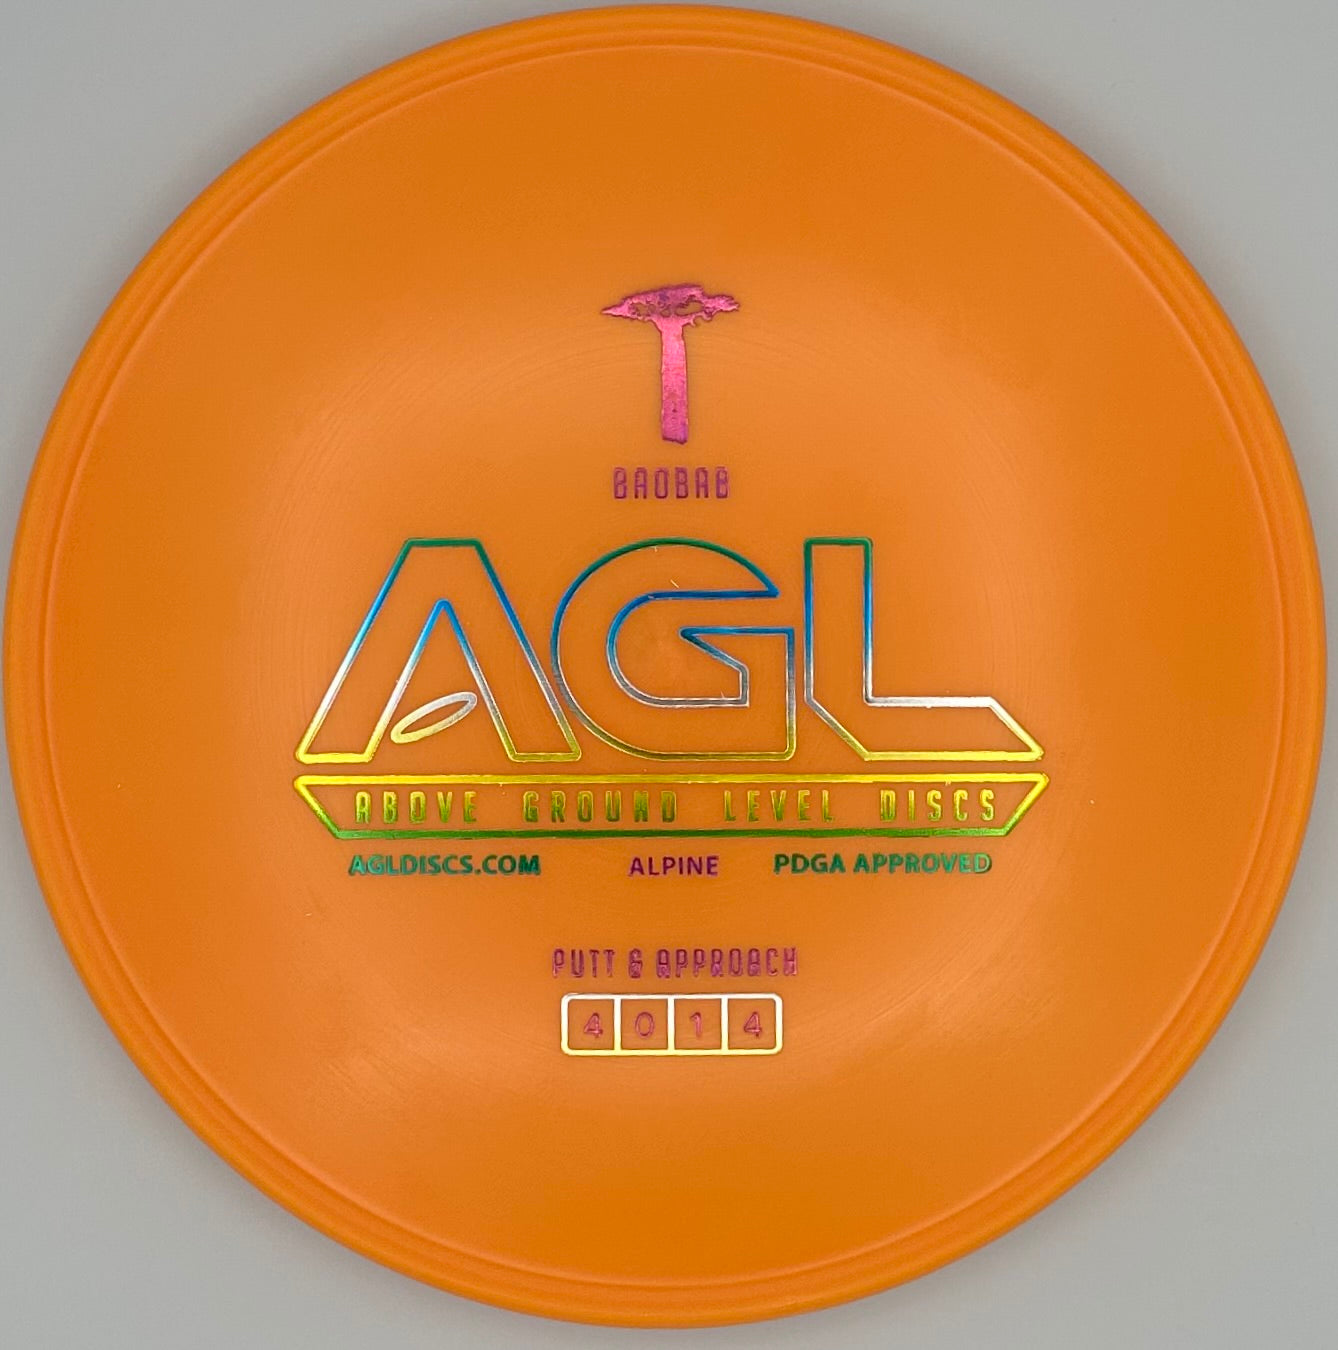 AGL Discs - Soda Pop Orange Alpine Baobab (AGL Bar Stamp)